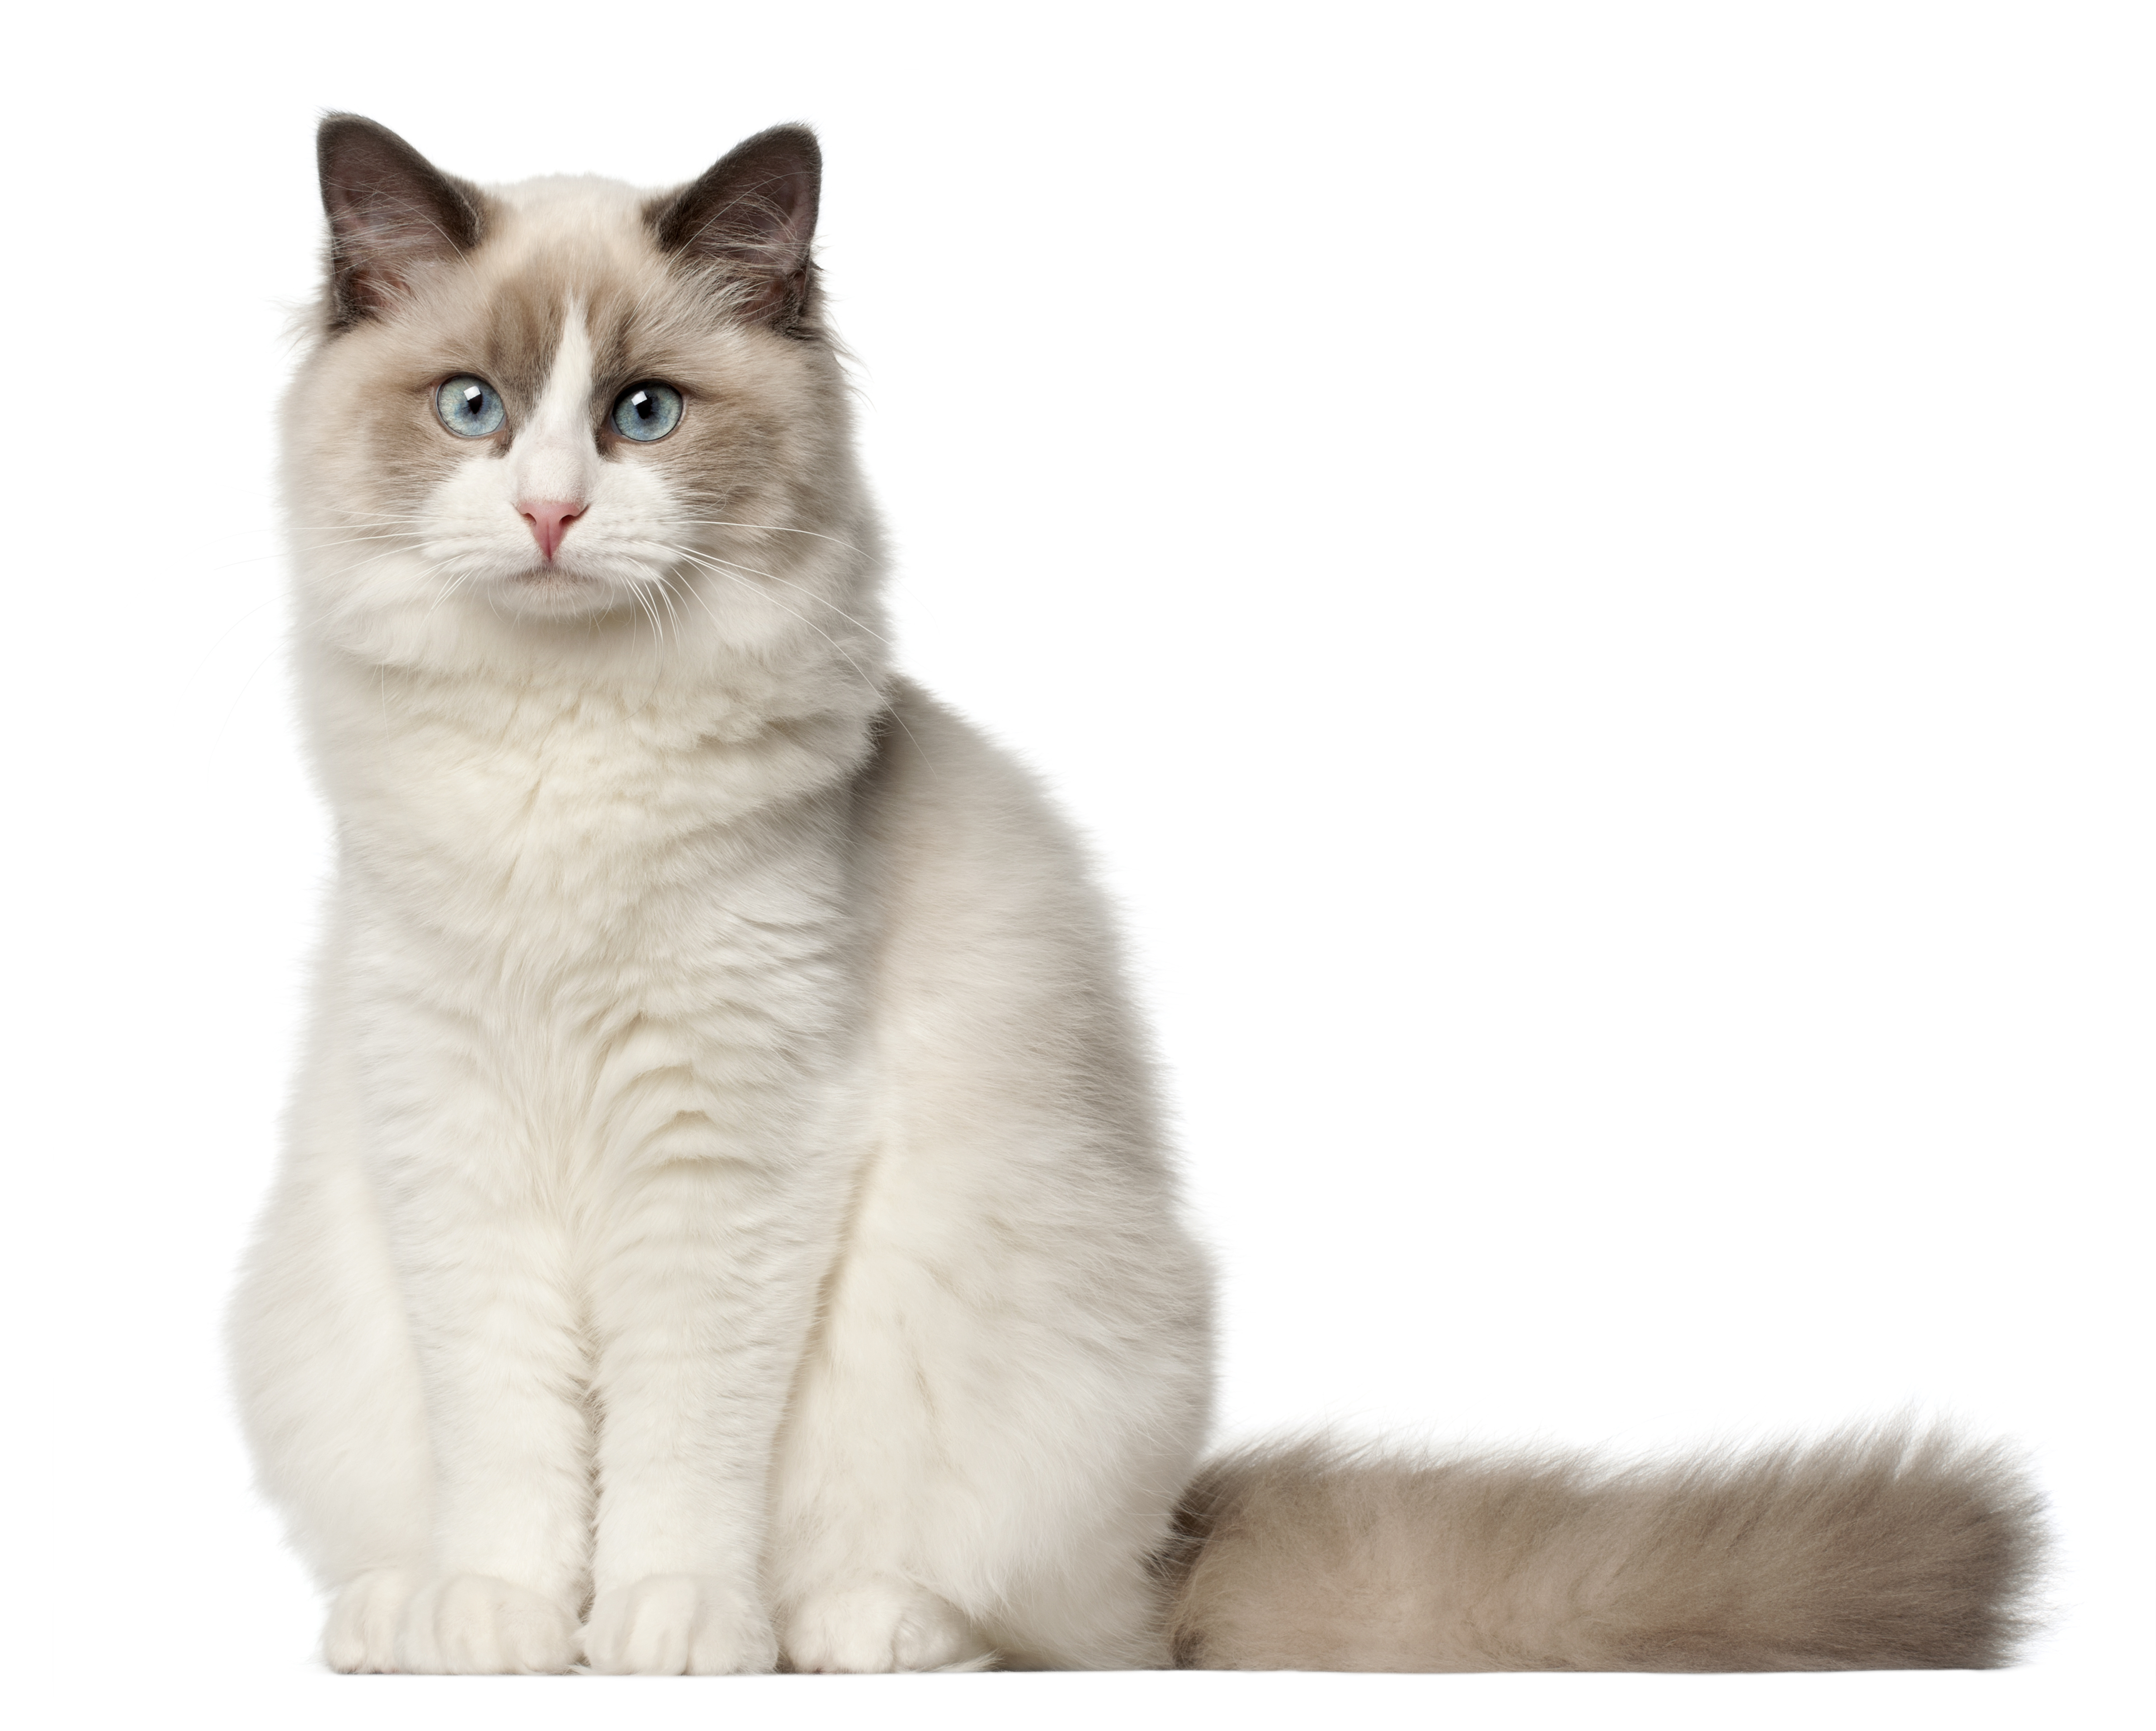 Litière BentoPearl Sensitive : idéale pour les chatons, les chats sensibles ou à poils longs